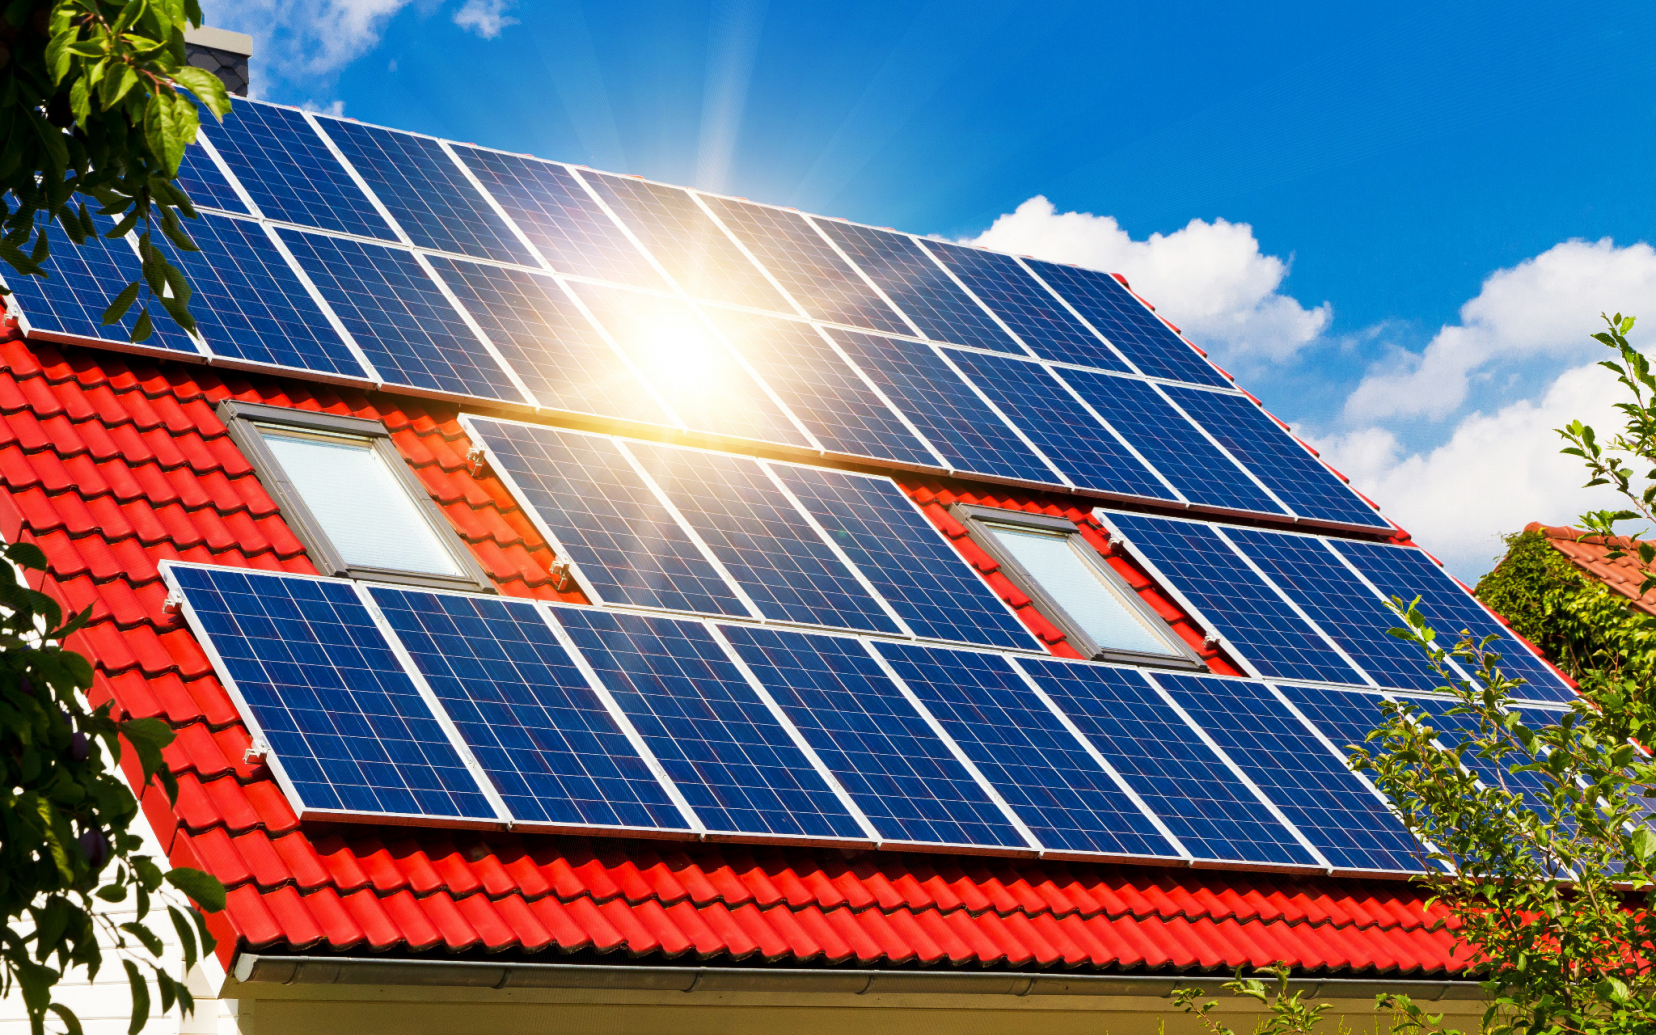 Anmeldung von Photovoltaik-Anlagen (PV-Anlagen)